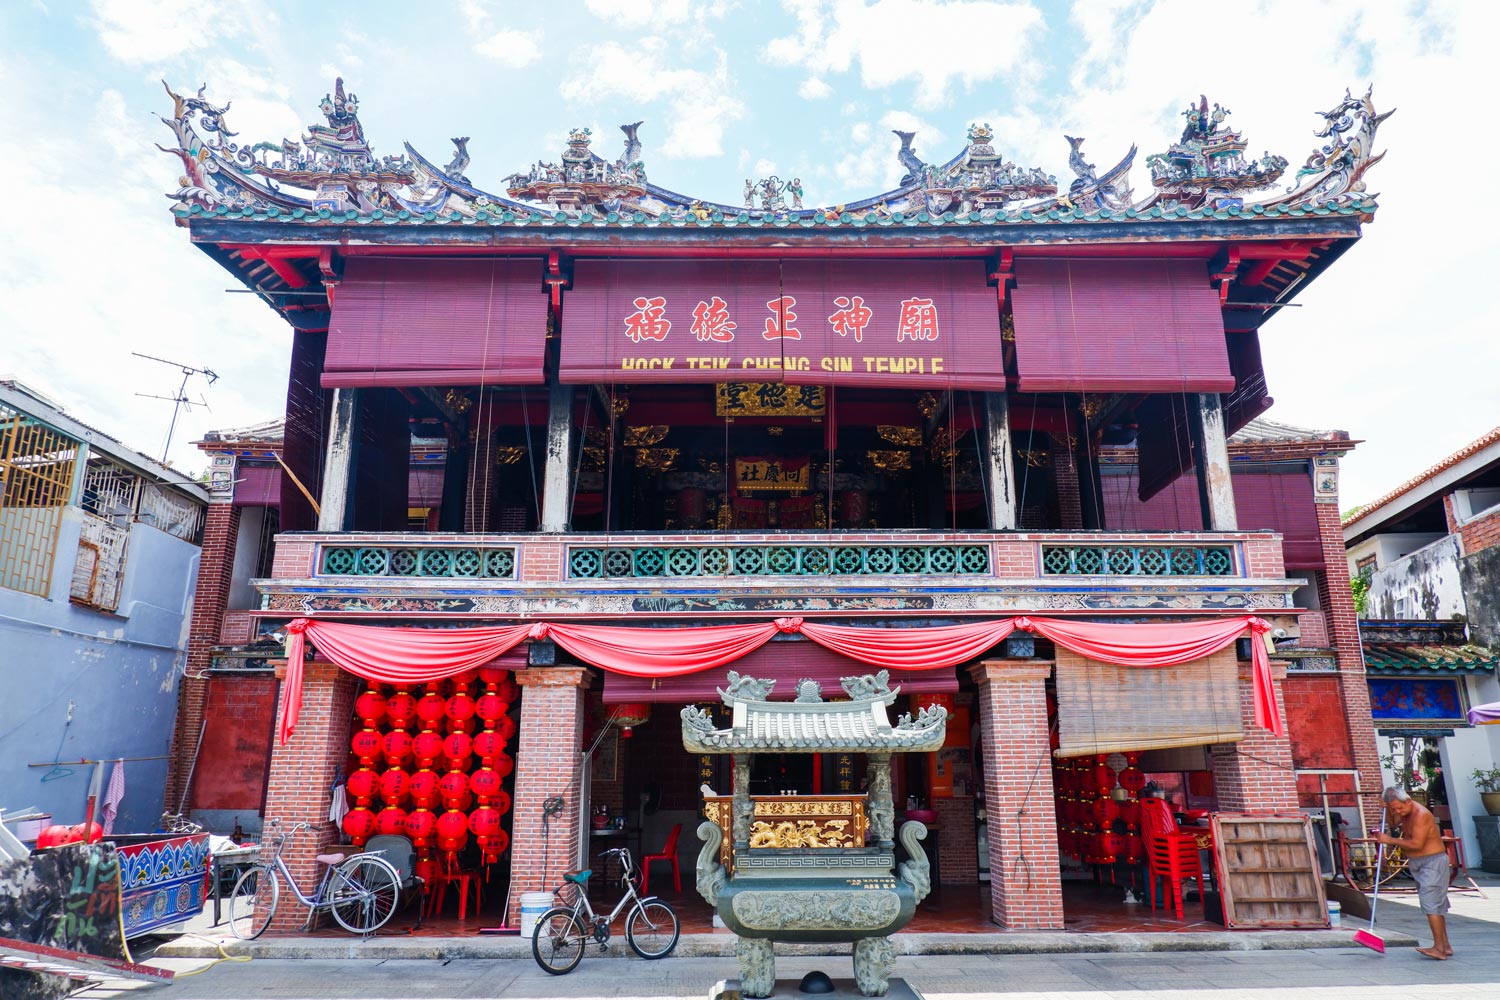 วัดฮกเต็กเจี่ยสิน (Hock Teik Cheng Sin Temple)